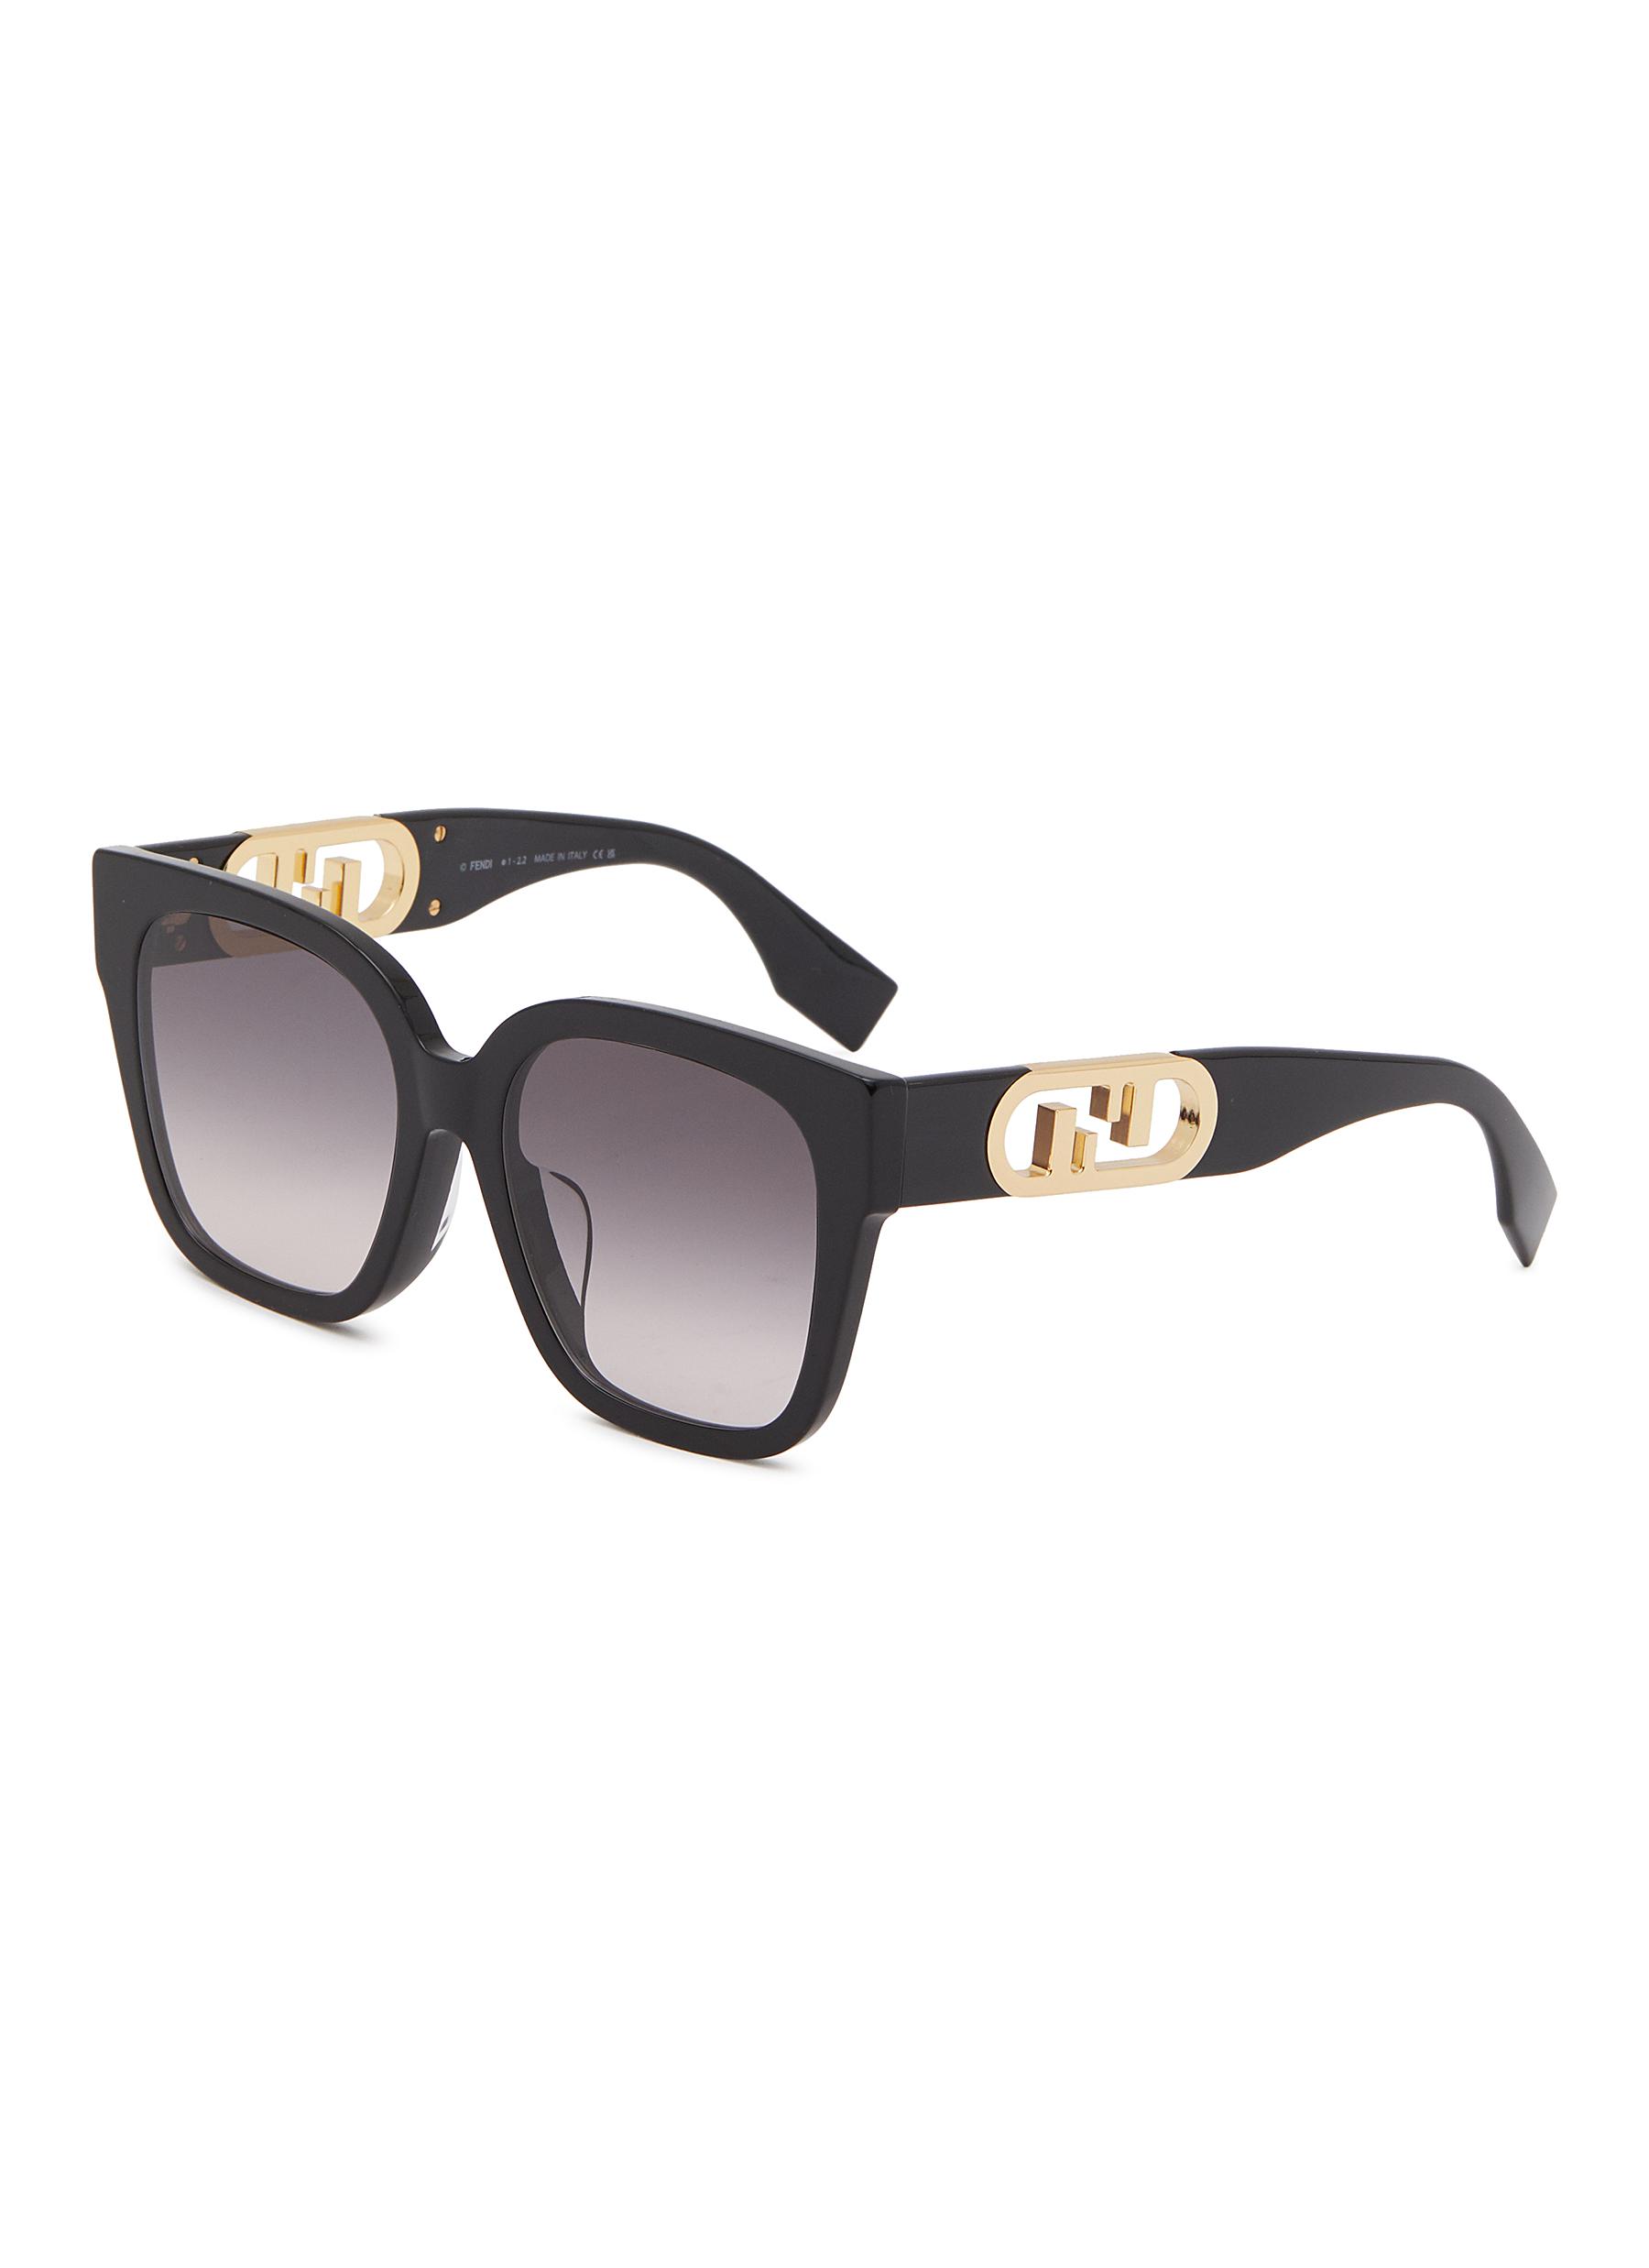 O'Lock - Brown acetate sunglasses